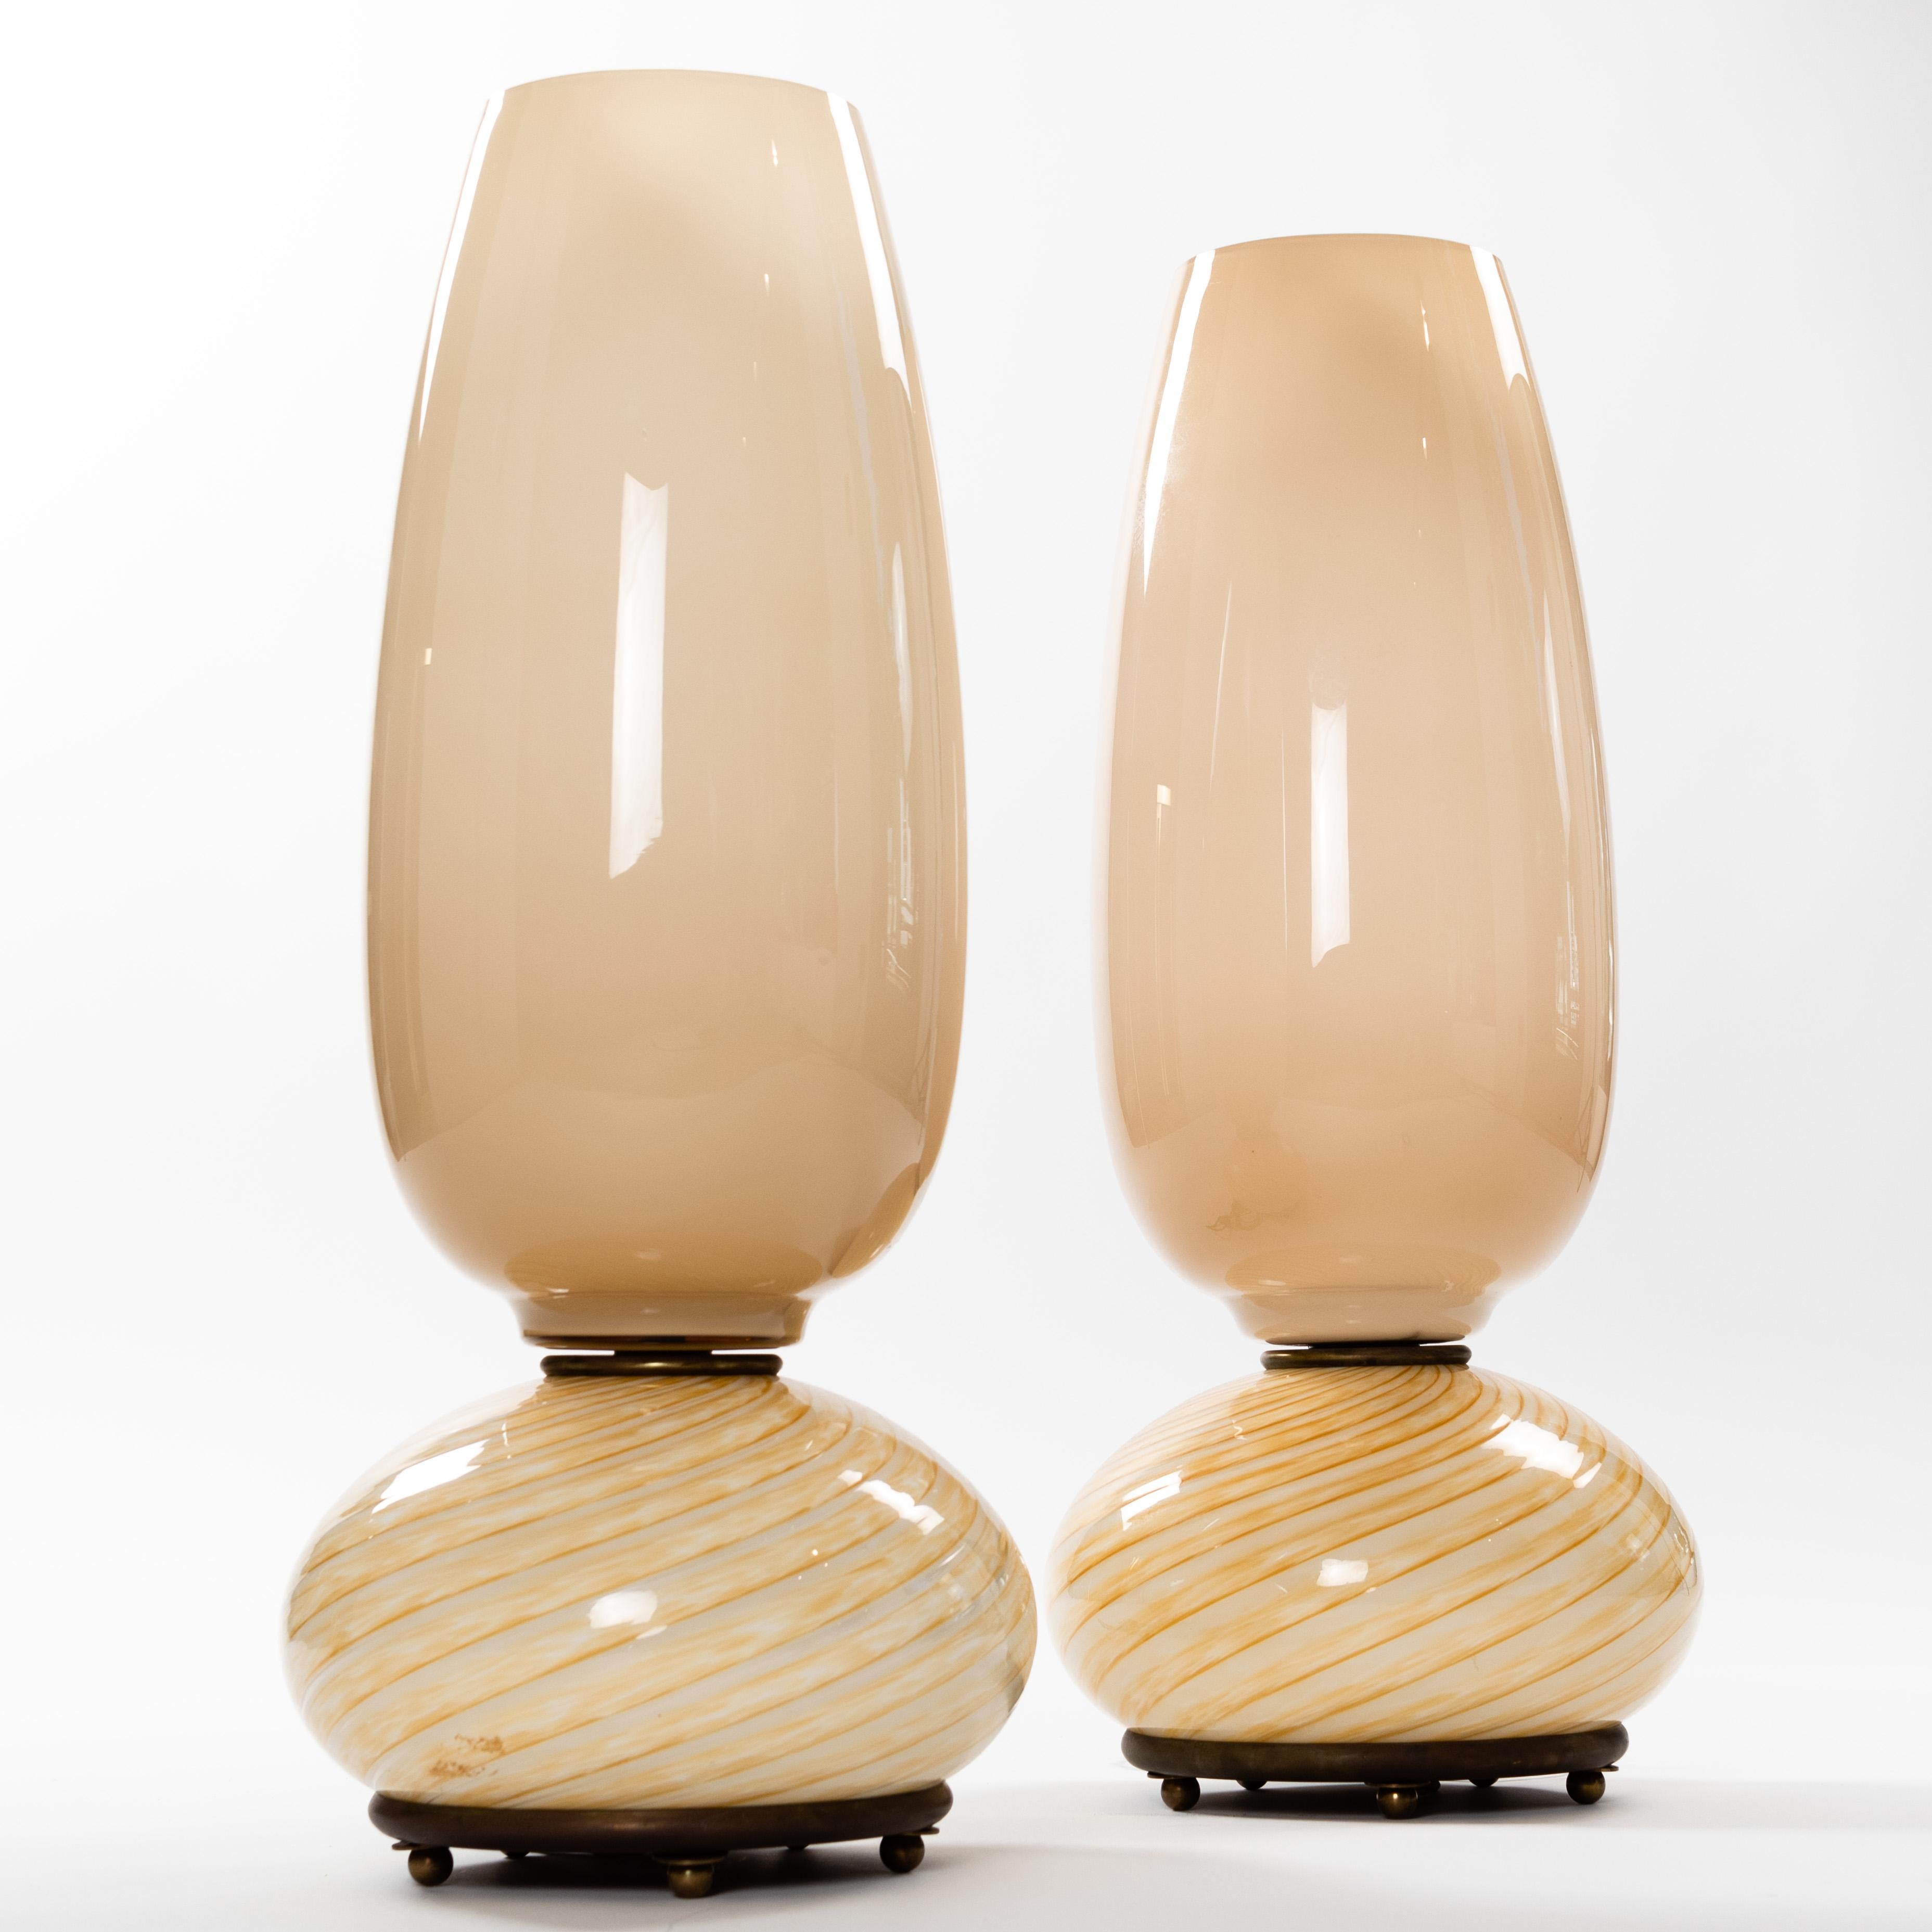 Une paire merveilleuse et rare de lampes de table Venini de la fin des années 1970.
De délicats verres de Murano de couleur camel donnent aux objets un ton doux. 
La base en verre en spirale repose sur une plaque en bronze avec de petits pieds en